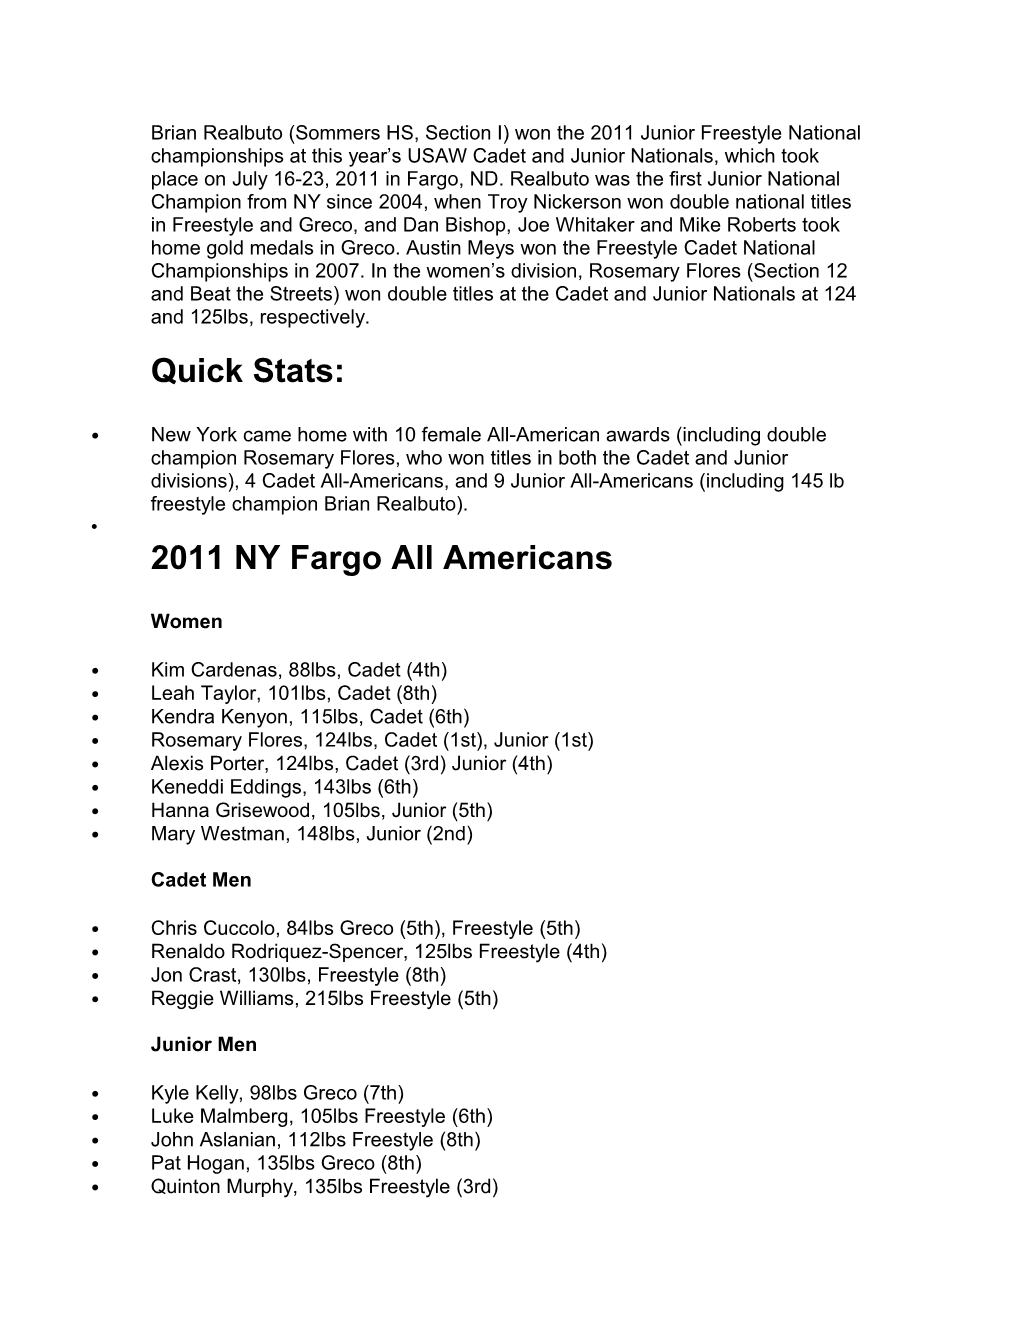 2011 NY Fargo All Americans